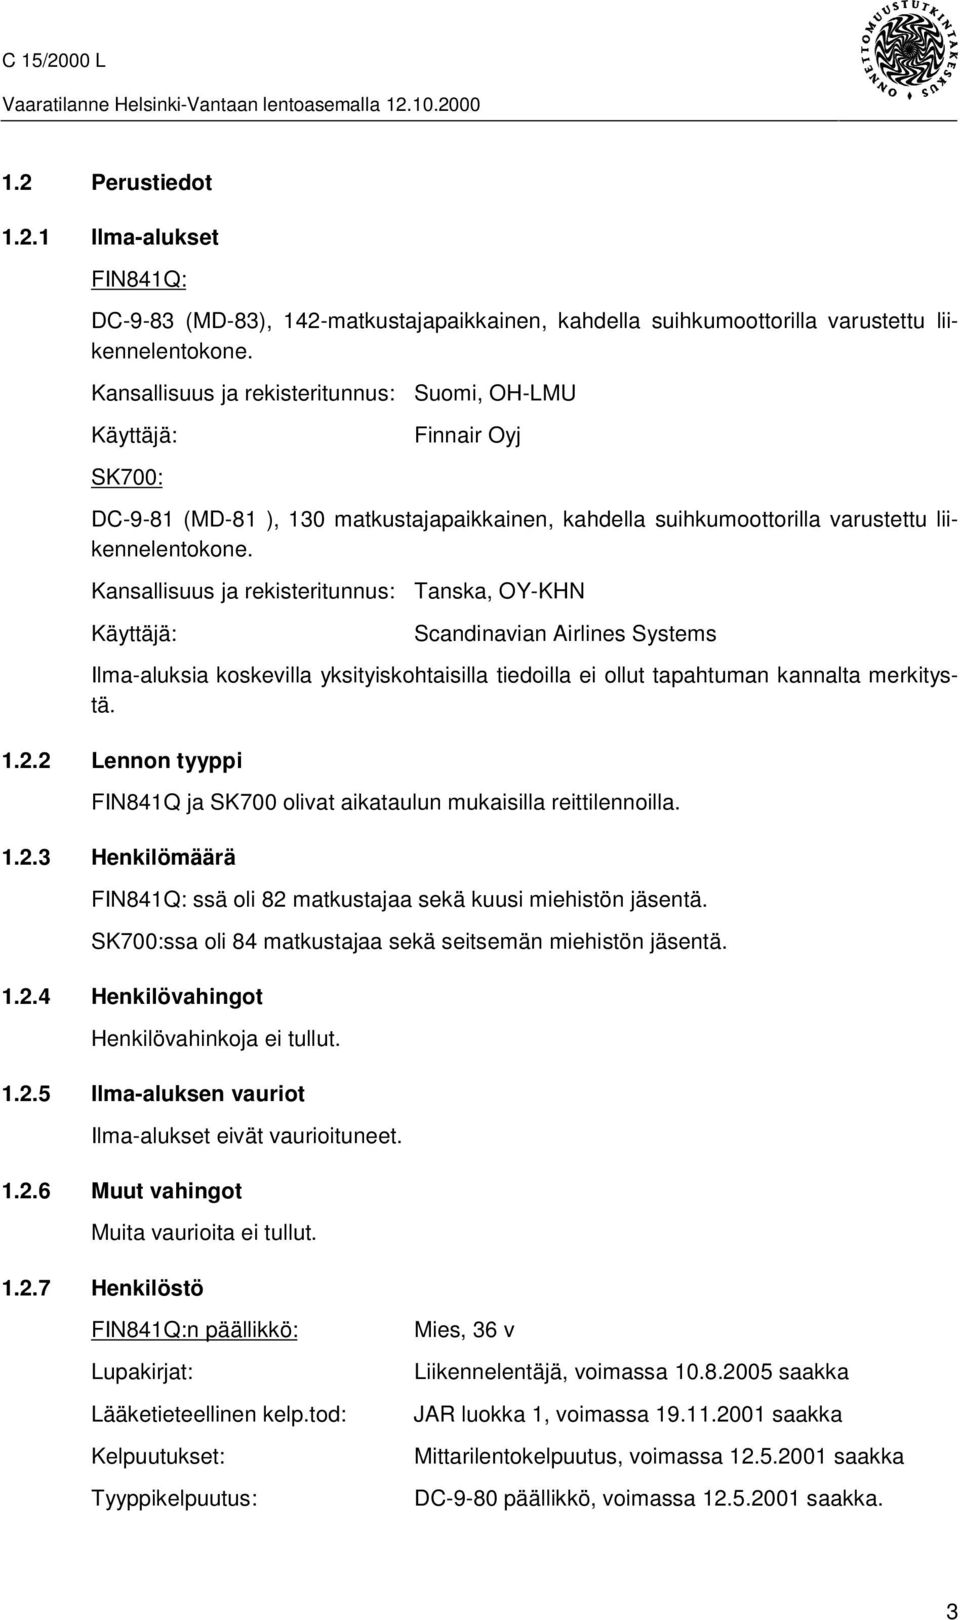 Kansallisuus ja rekisteritunnus: Käyttäjä: Tanska, OY-KHN Scandinavian Airlines Systems Ilma-aluksia koskevilla yksityiskohtaisilla tiedoilla ei ollut tapahtuman kannalta merkitystä. 1.2.